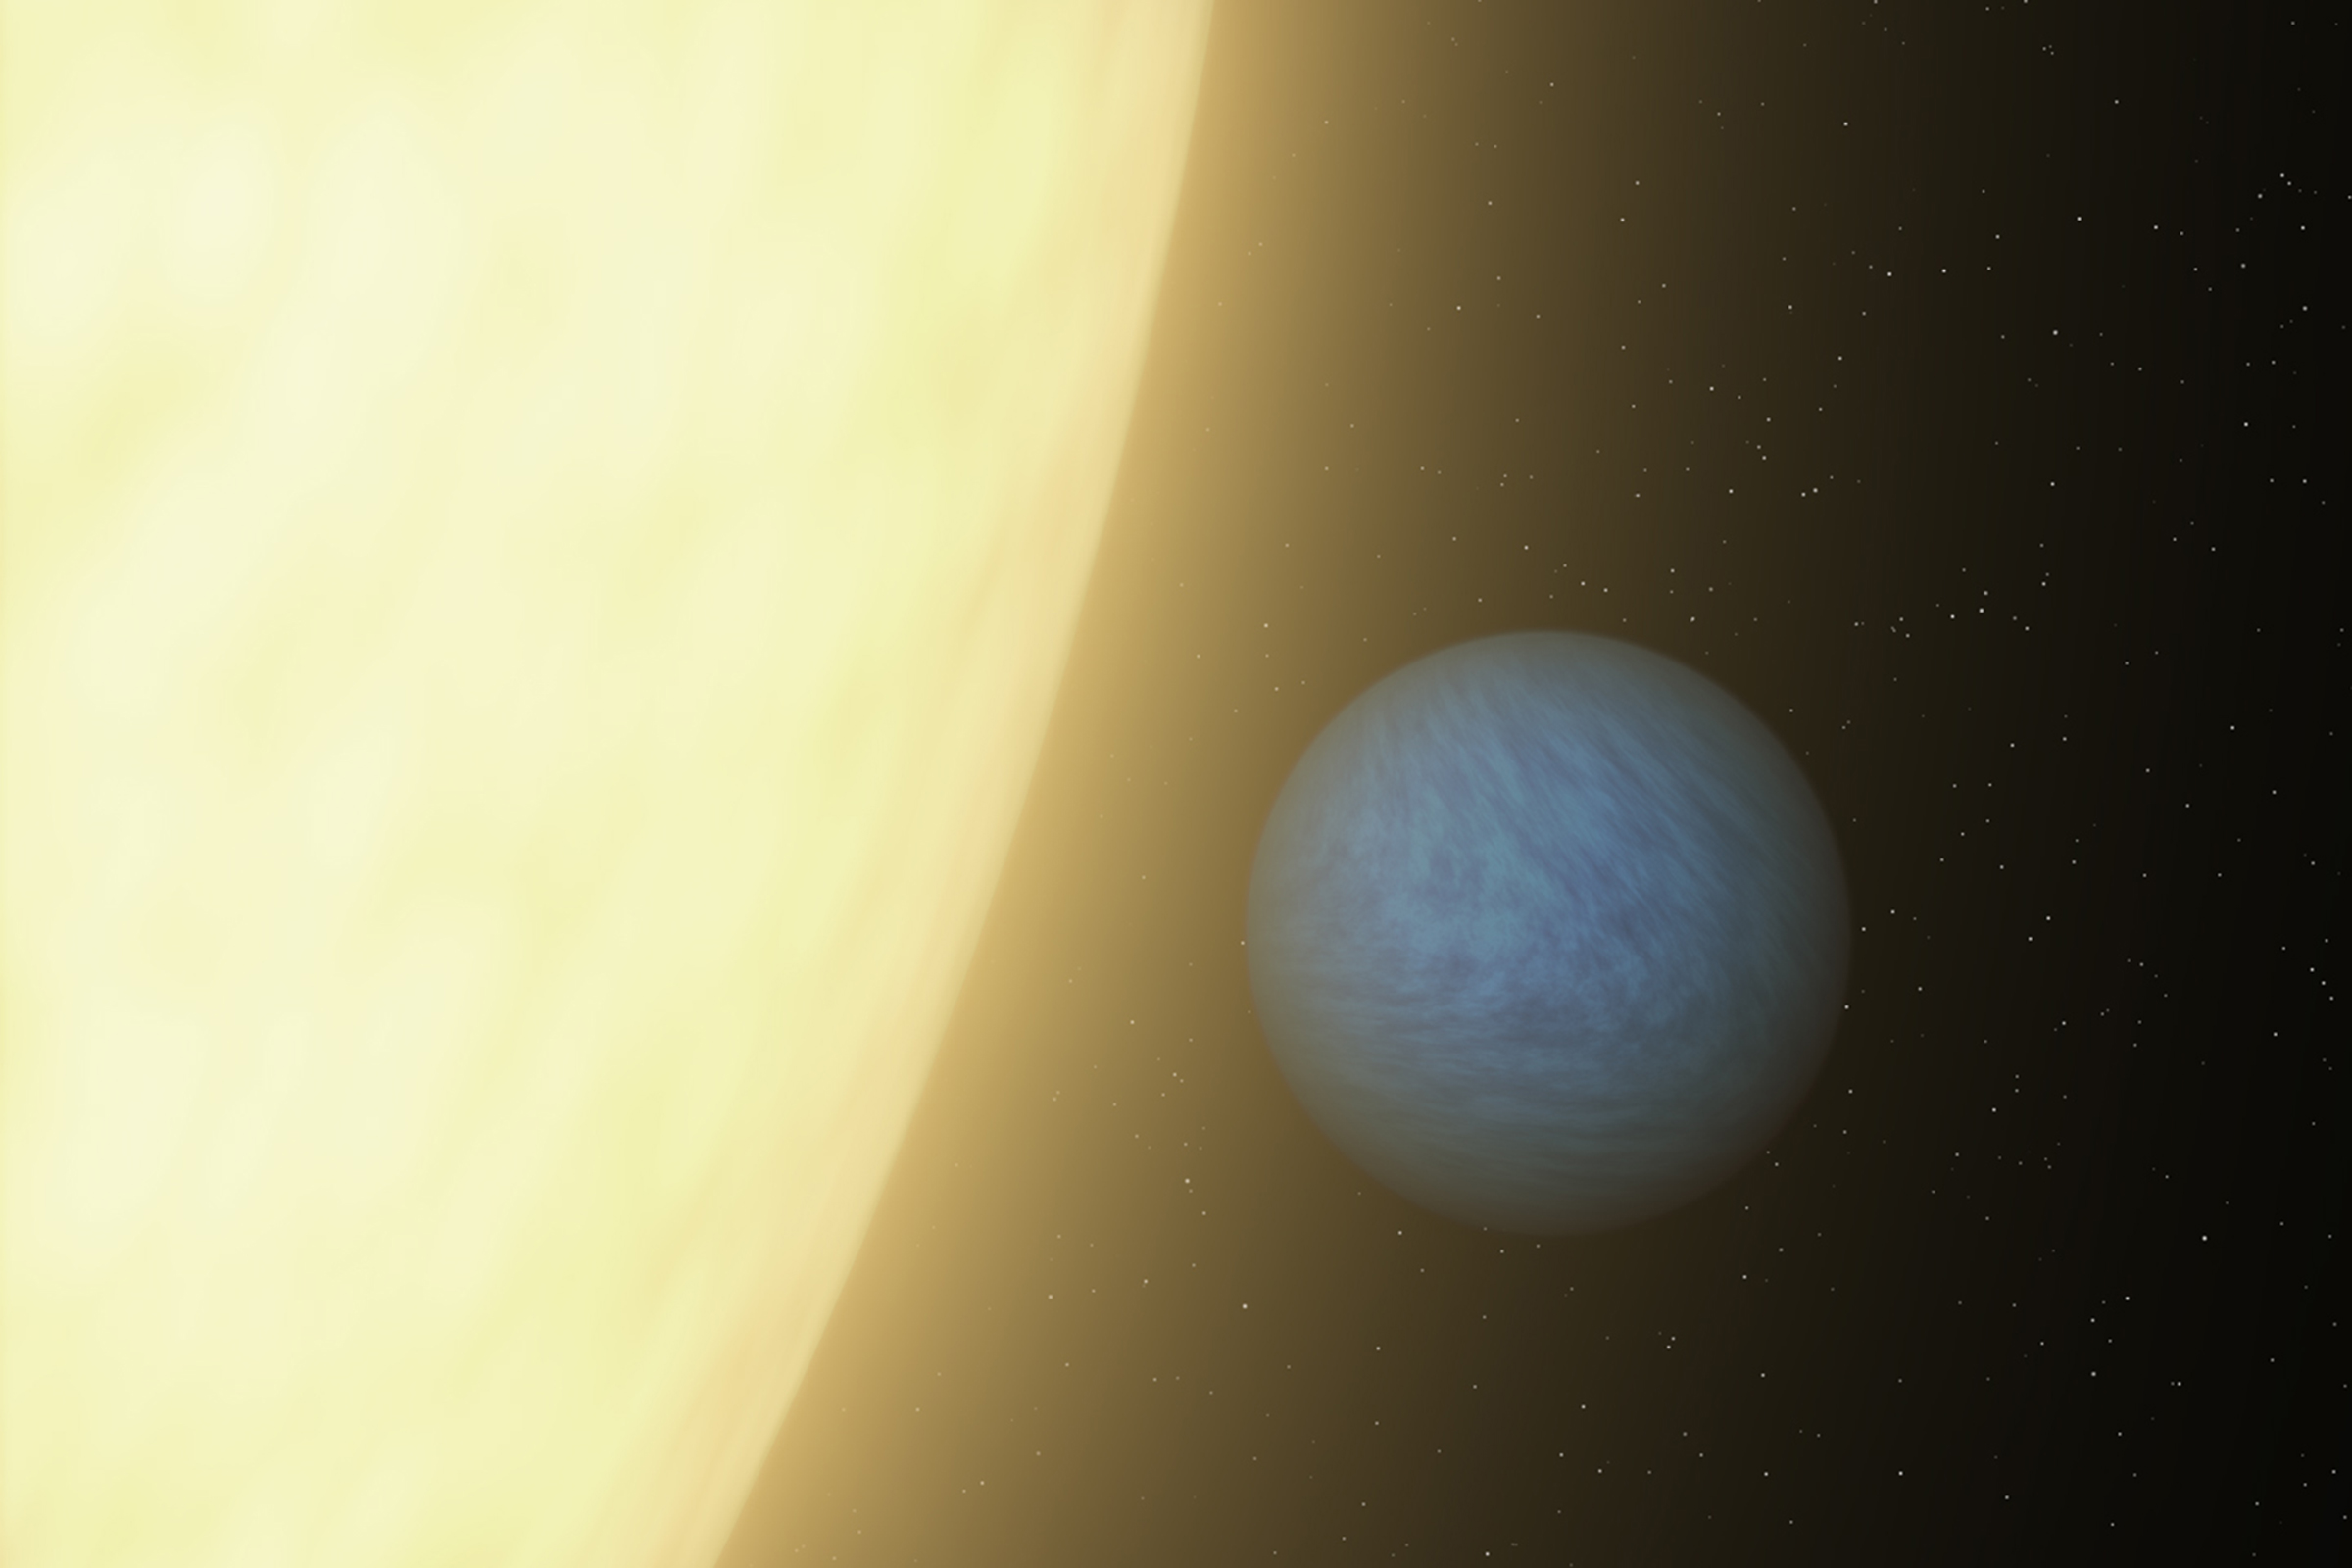 Находится в планетной системе солнцеподобной звезды 55 Рака A в двойной системе 55 Рака. Была открыта в 2004 году. Обращается вокруг материнской звезды за 17 часов и 41 минуту и всегда обращена к ней одной стороной. Согласно последним исследованиям, в ее атмосфере крайне мало воды.
&nbsp;